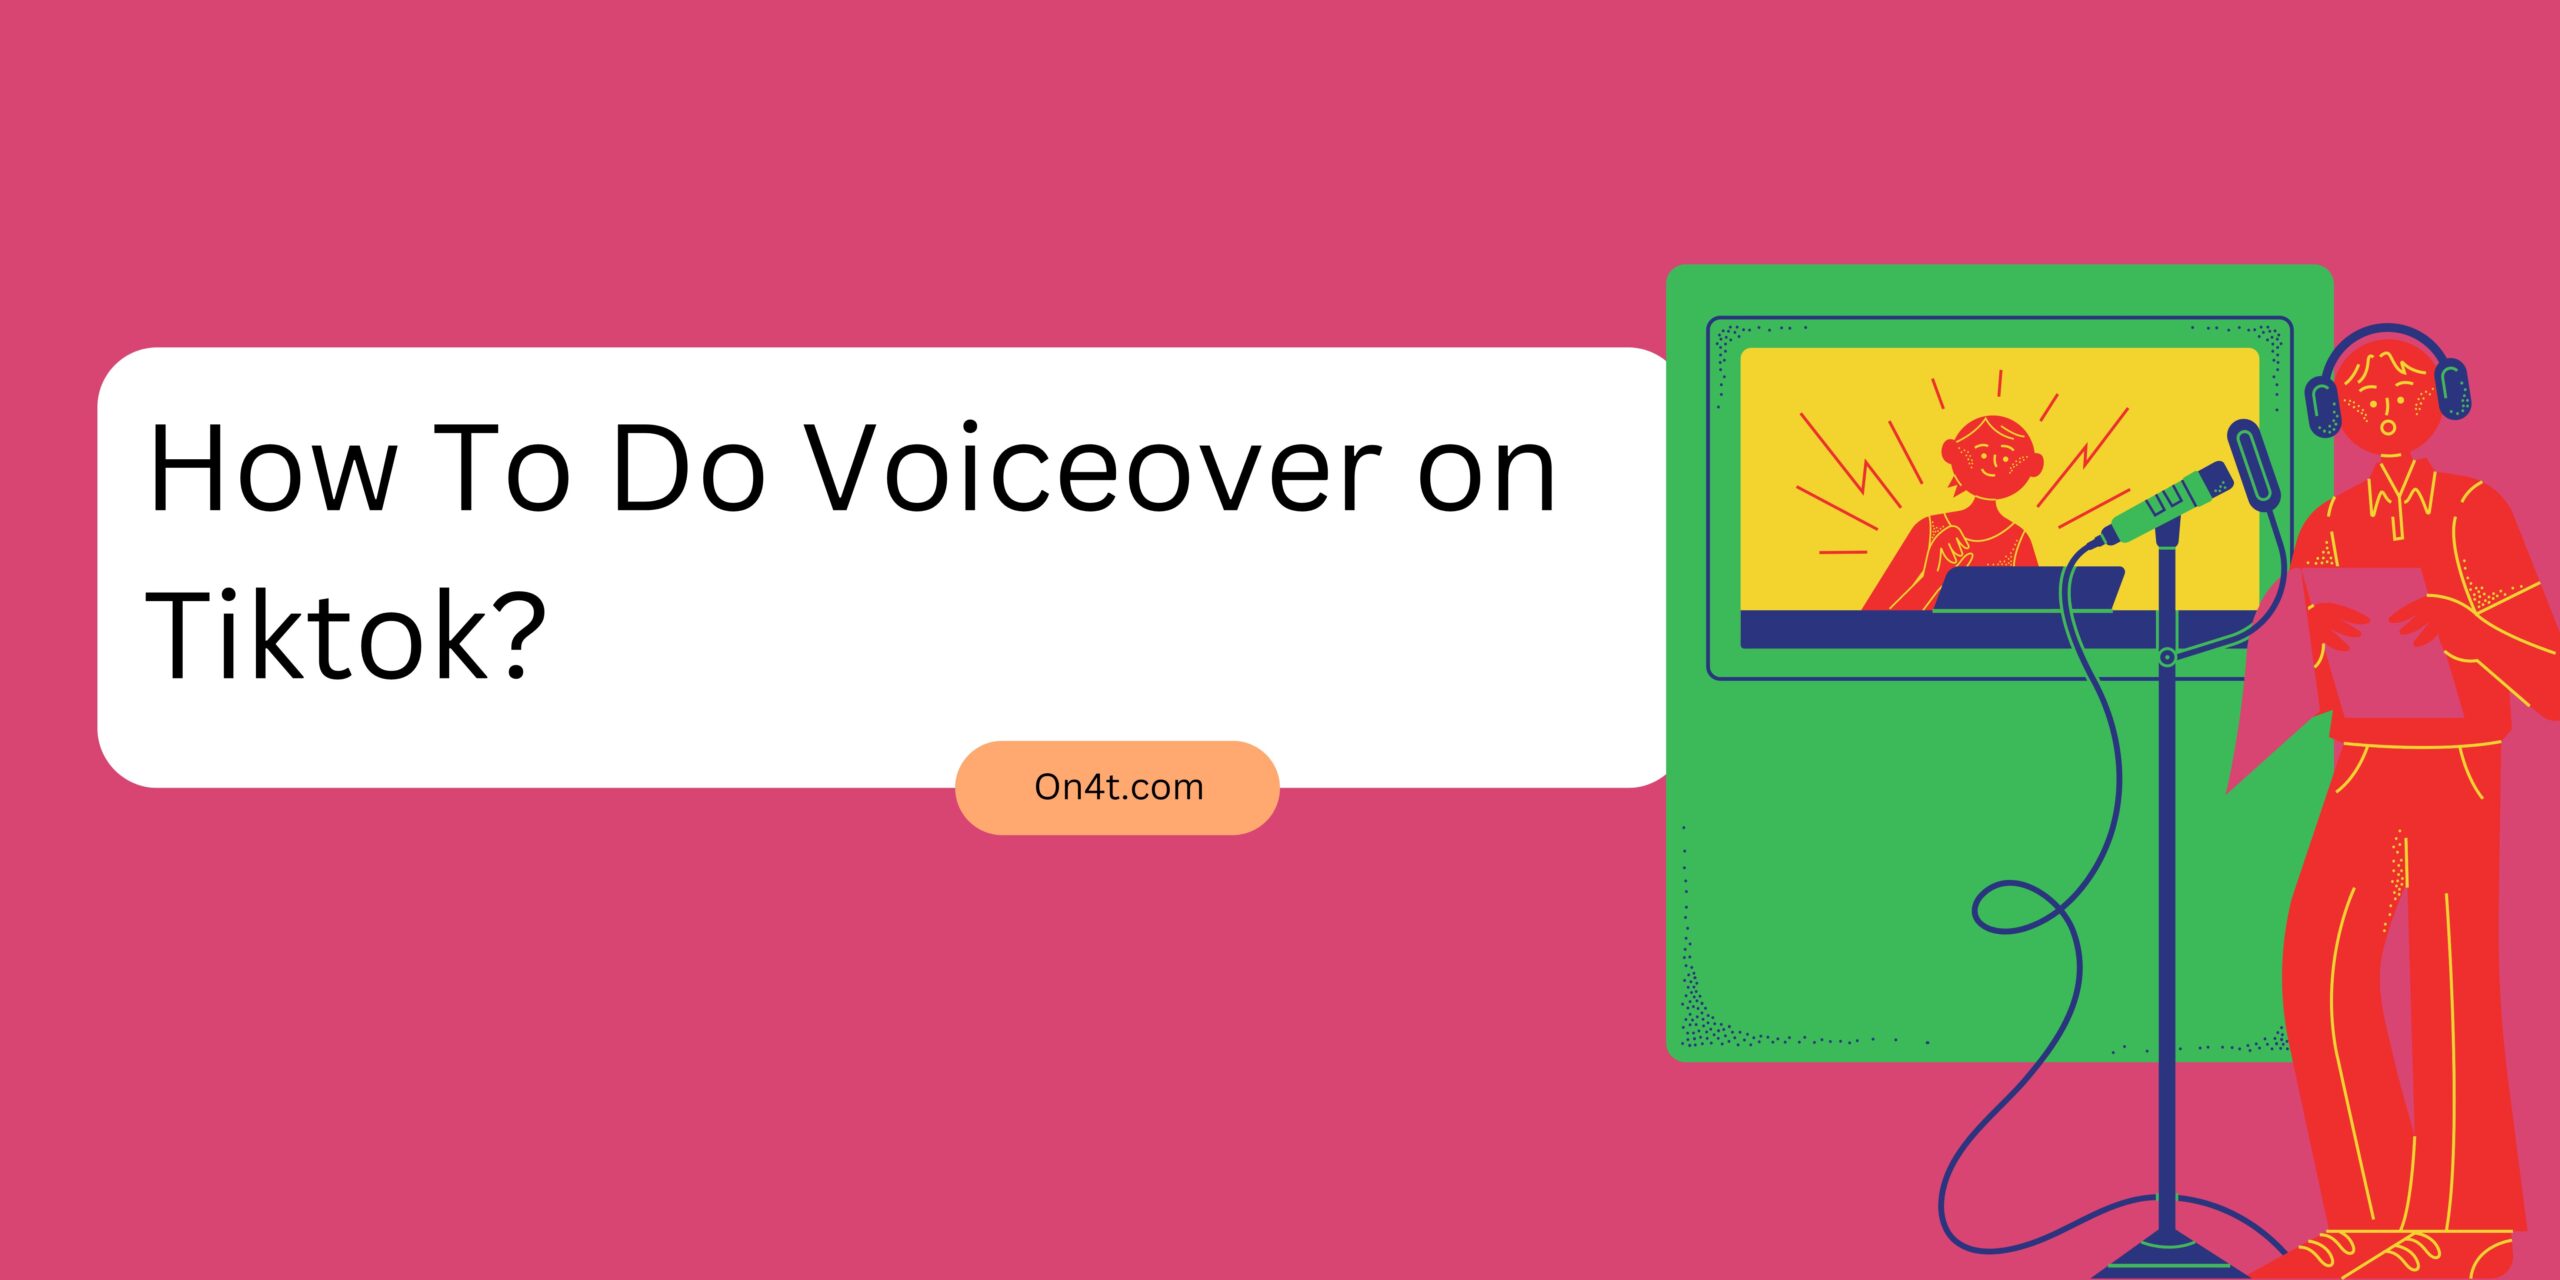 How To Do Voiceover on Tiktok?